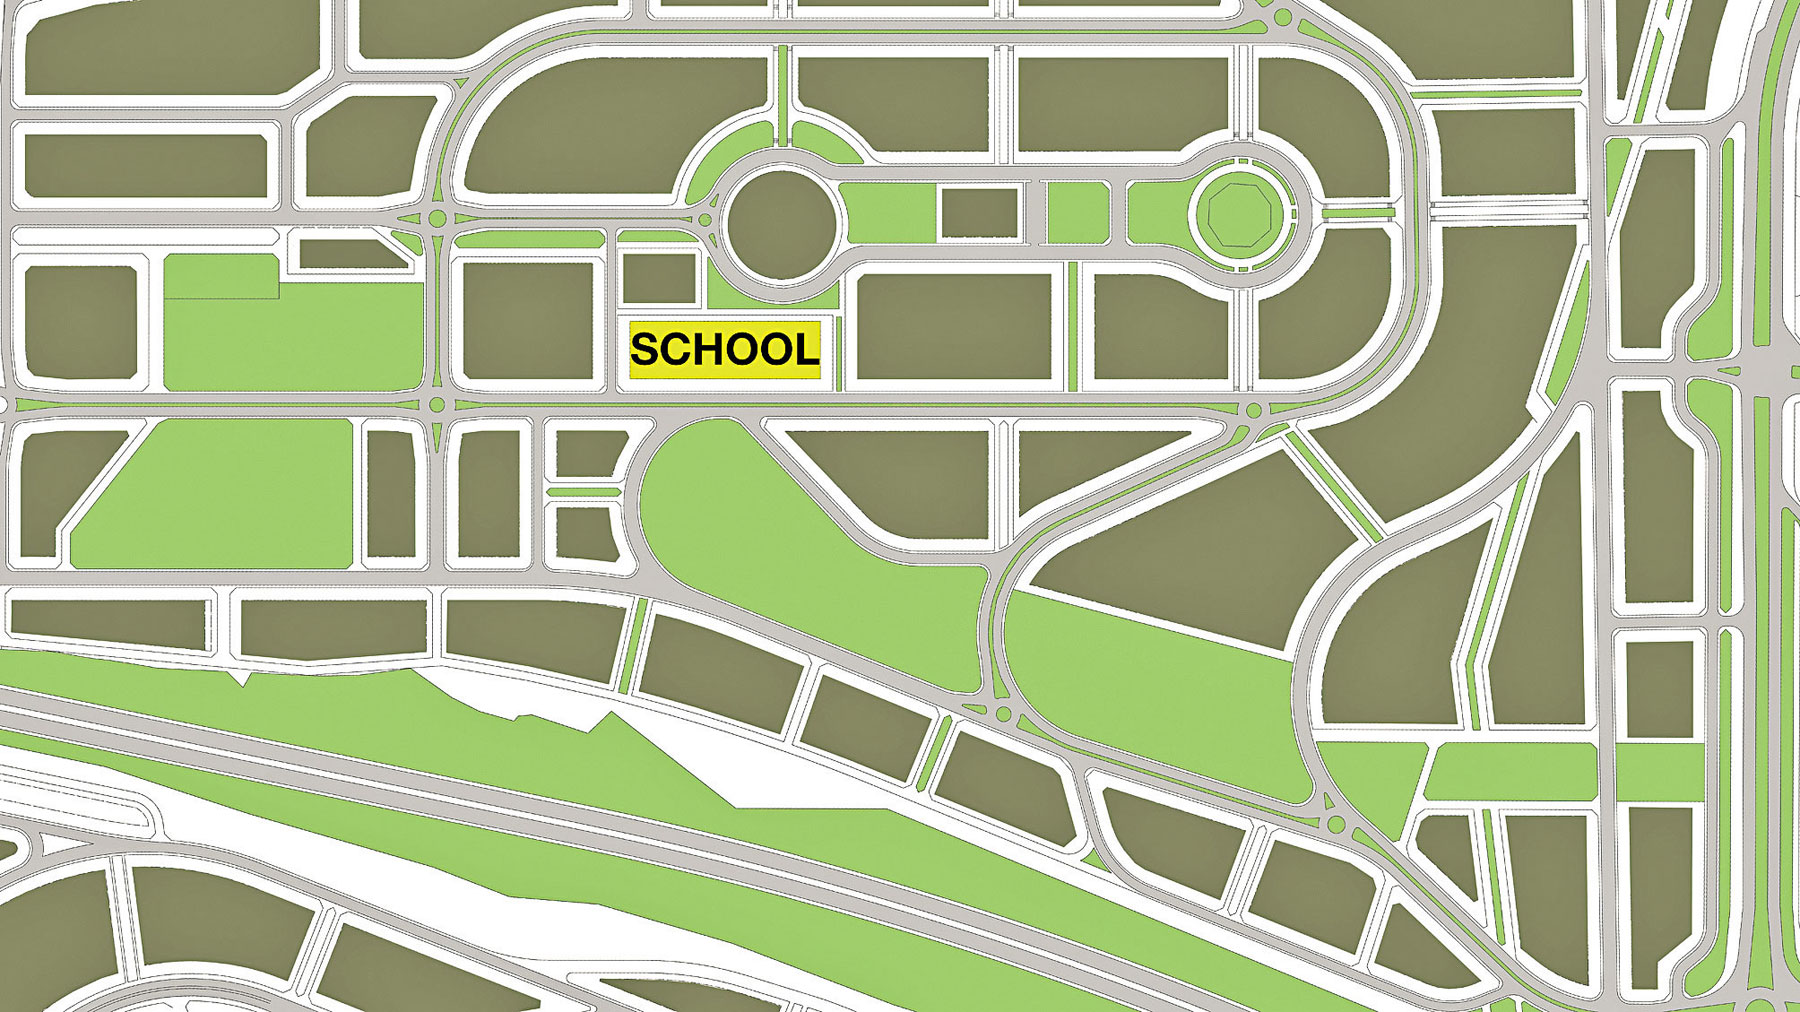 Situácia. Na tomto urbanistickom návrhu je pozemok školy, pod ktorým sa tiahne dlhý zelený pás lesoparku.